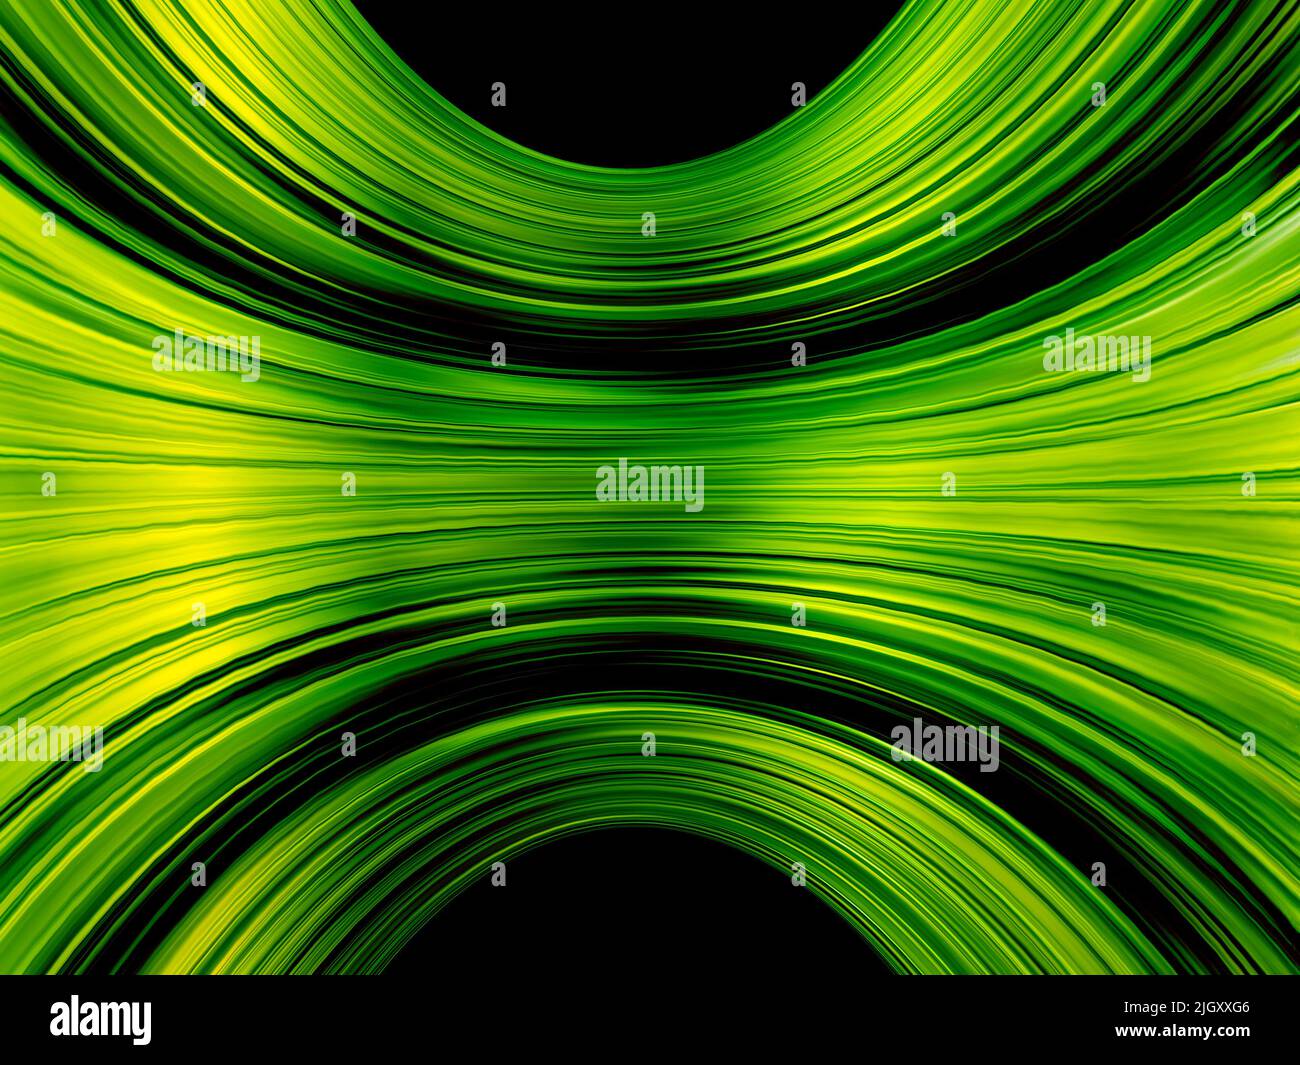 Abstrakter Hintergrund mit unendlichen Lichtspuren von grüner Farbe. Stockfoto